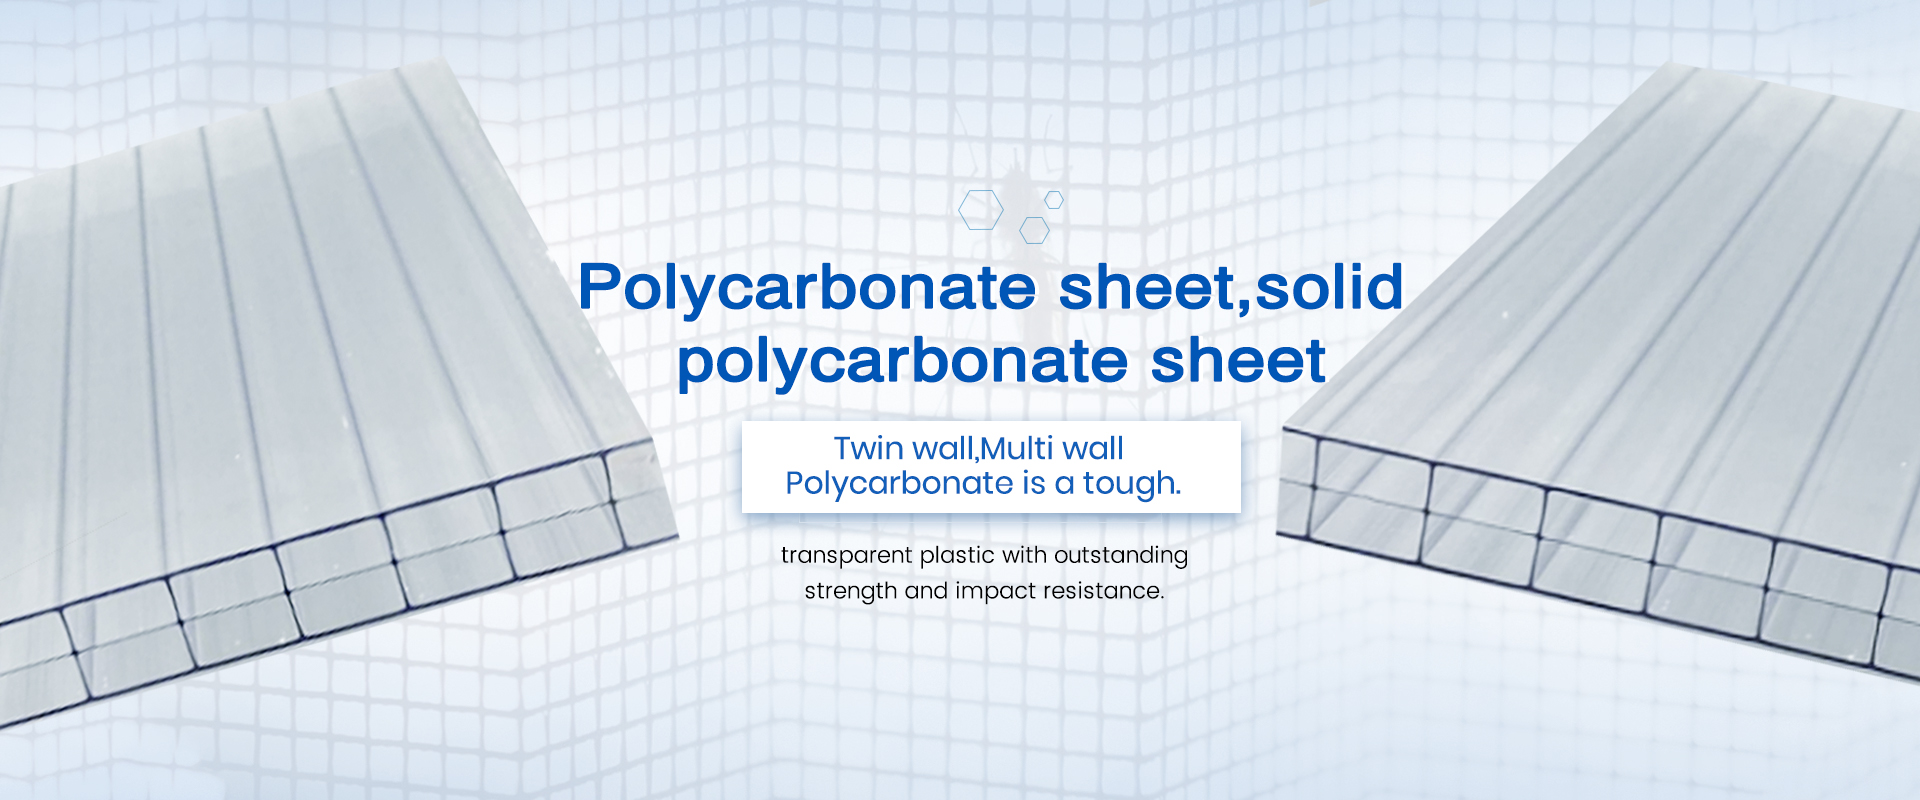 Folha de policarbonato, folha sólida de policarbonato